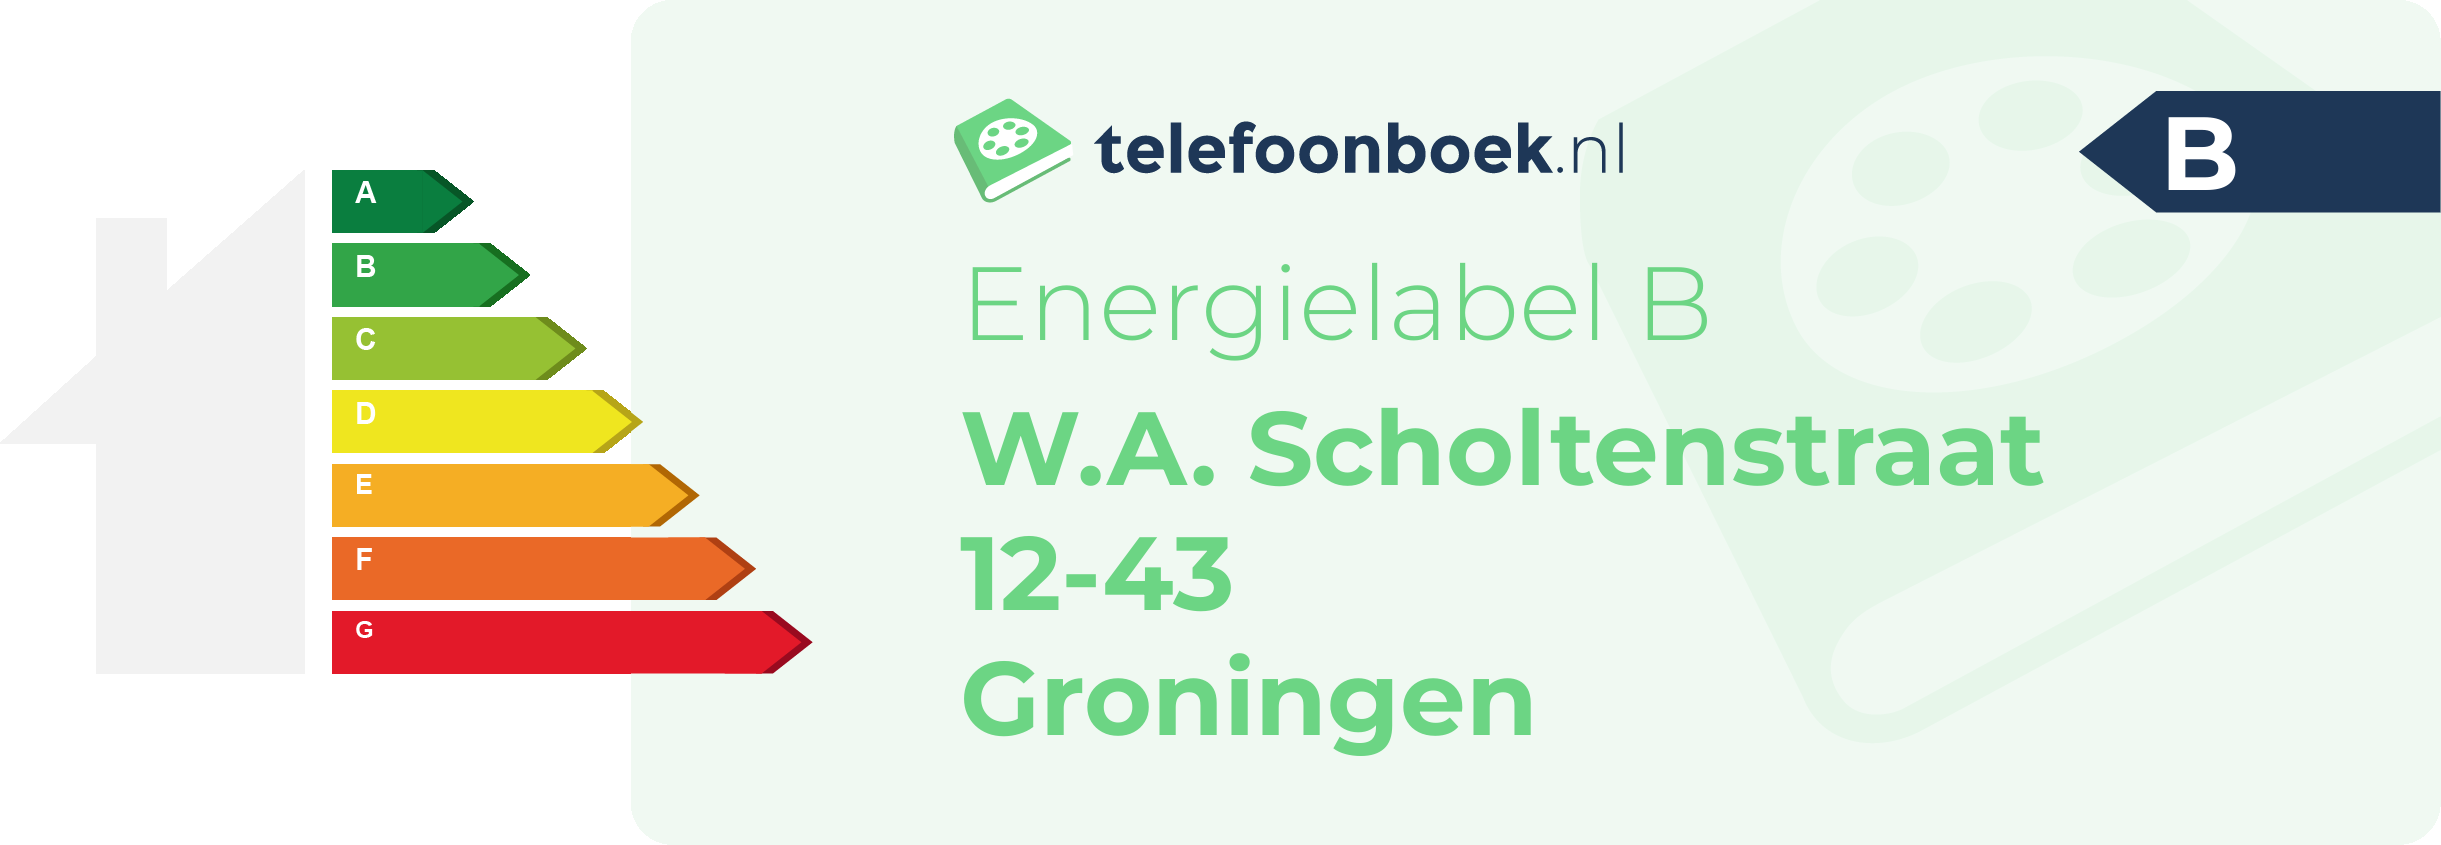 Energielabel W.A. Scholtenstraat 12-43 Groningen